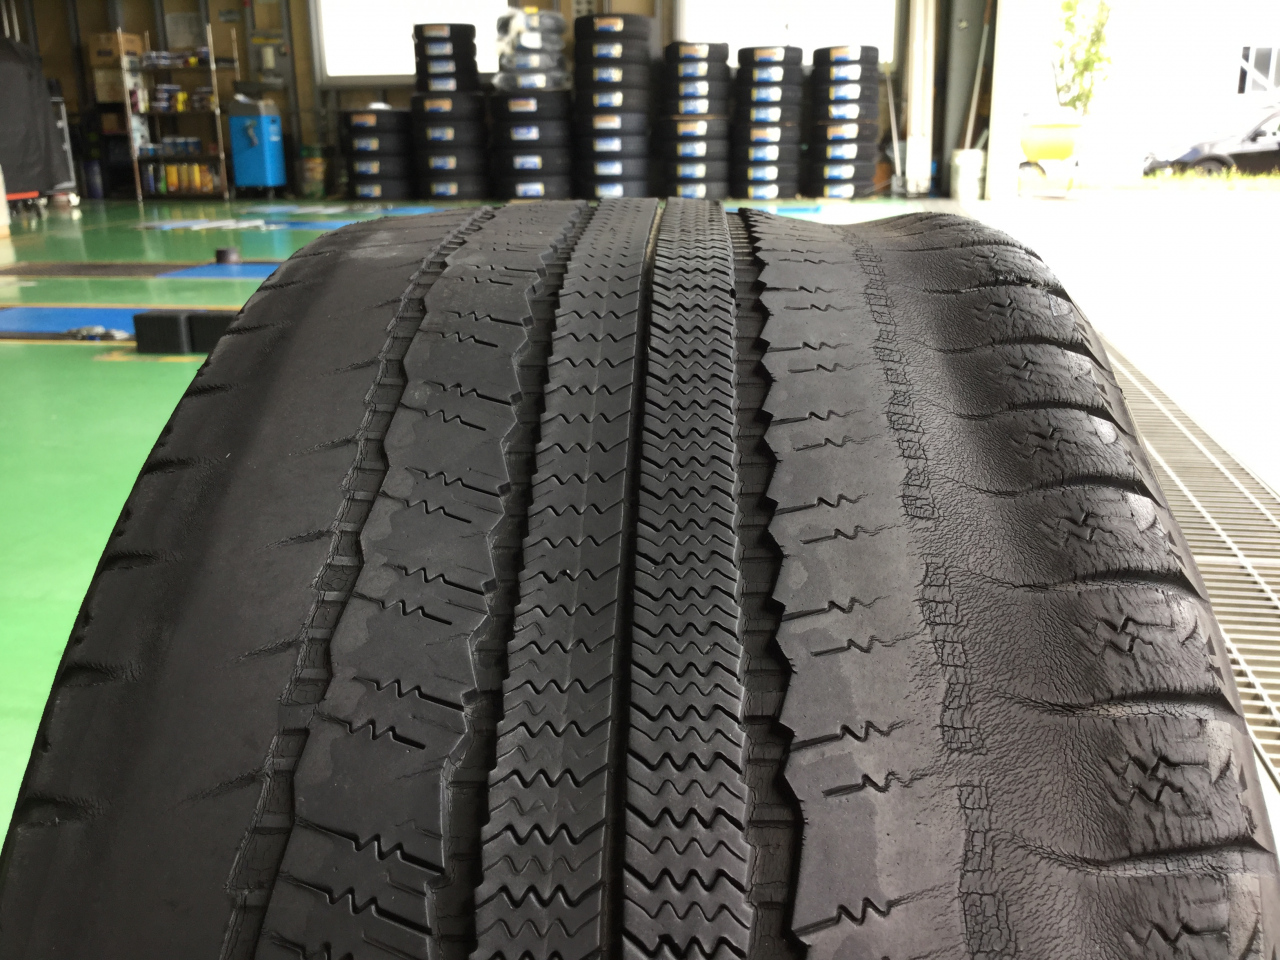 必見 冬タイヤの履きつぶしは危険です お知らせ タイヤセレクト弘前城東 タイヤセレクト タイヤランド Dunlop